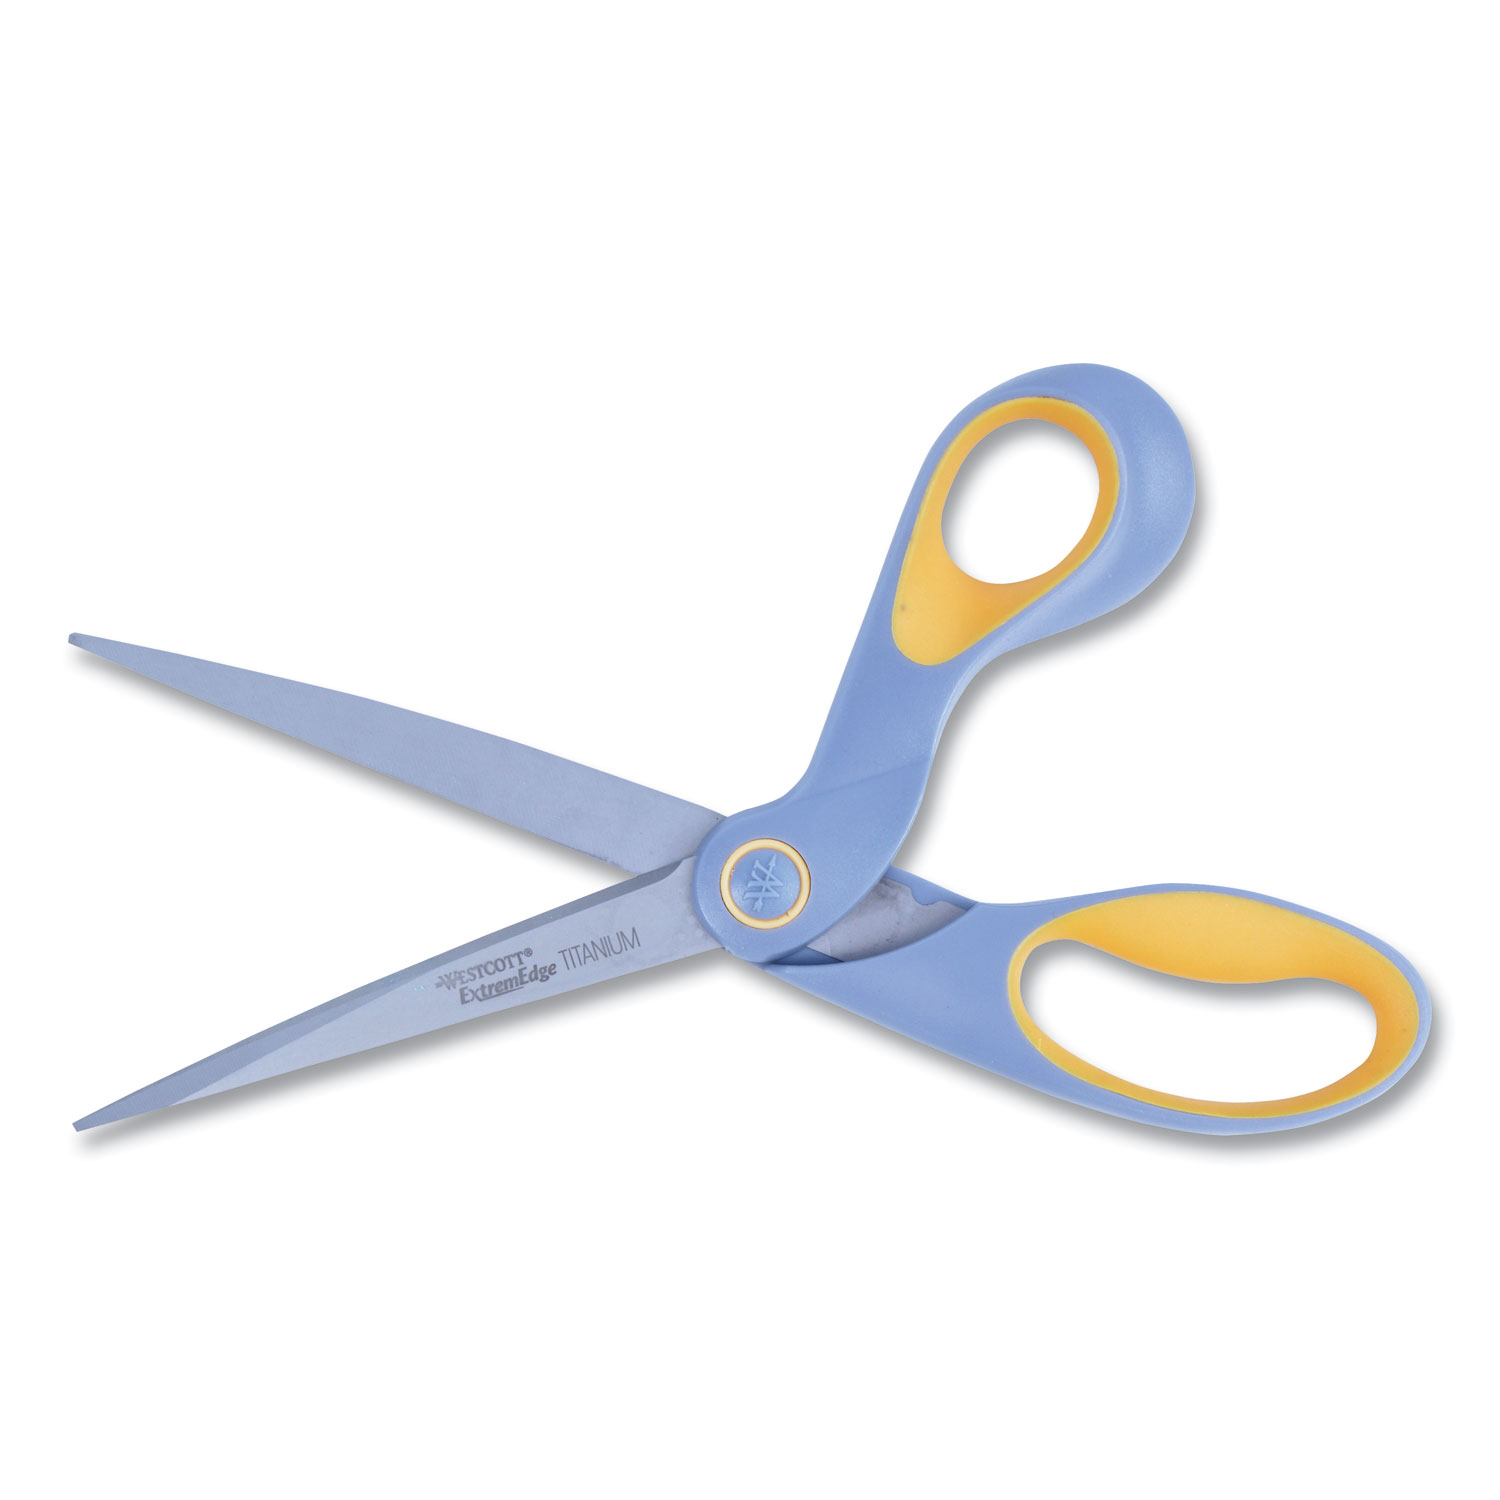 Westcott® Titanium Bonded Micro Tip Scissors